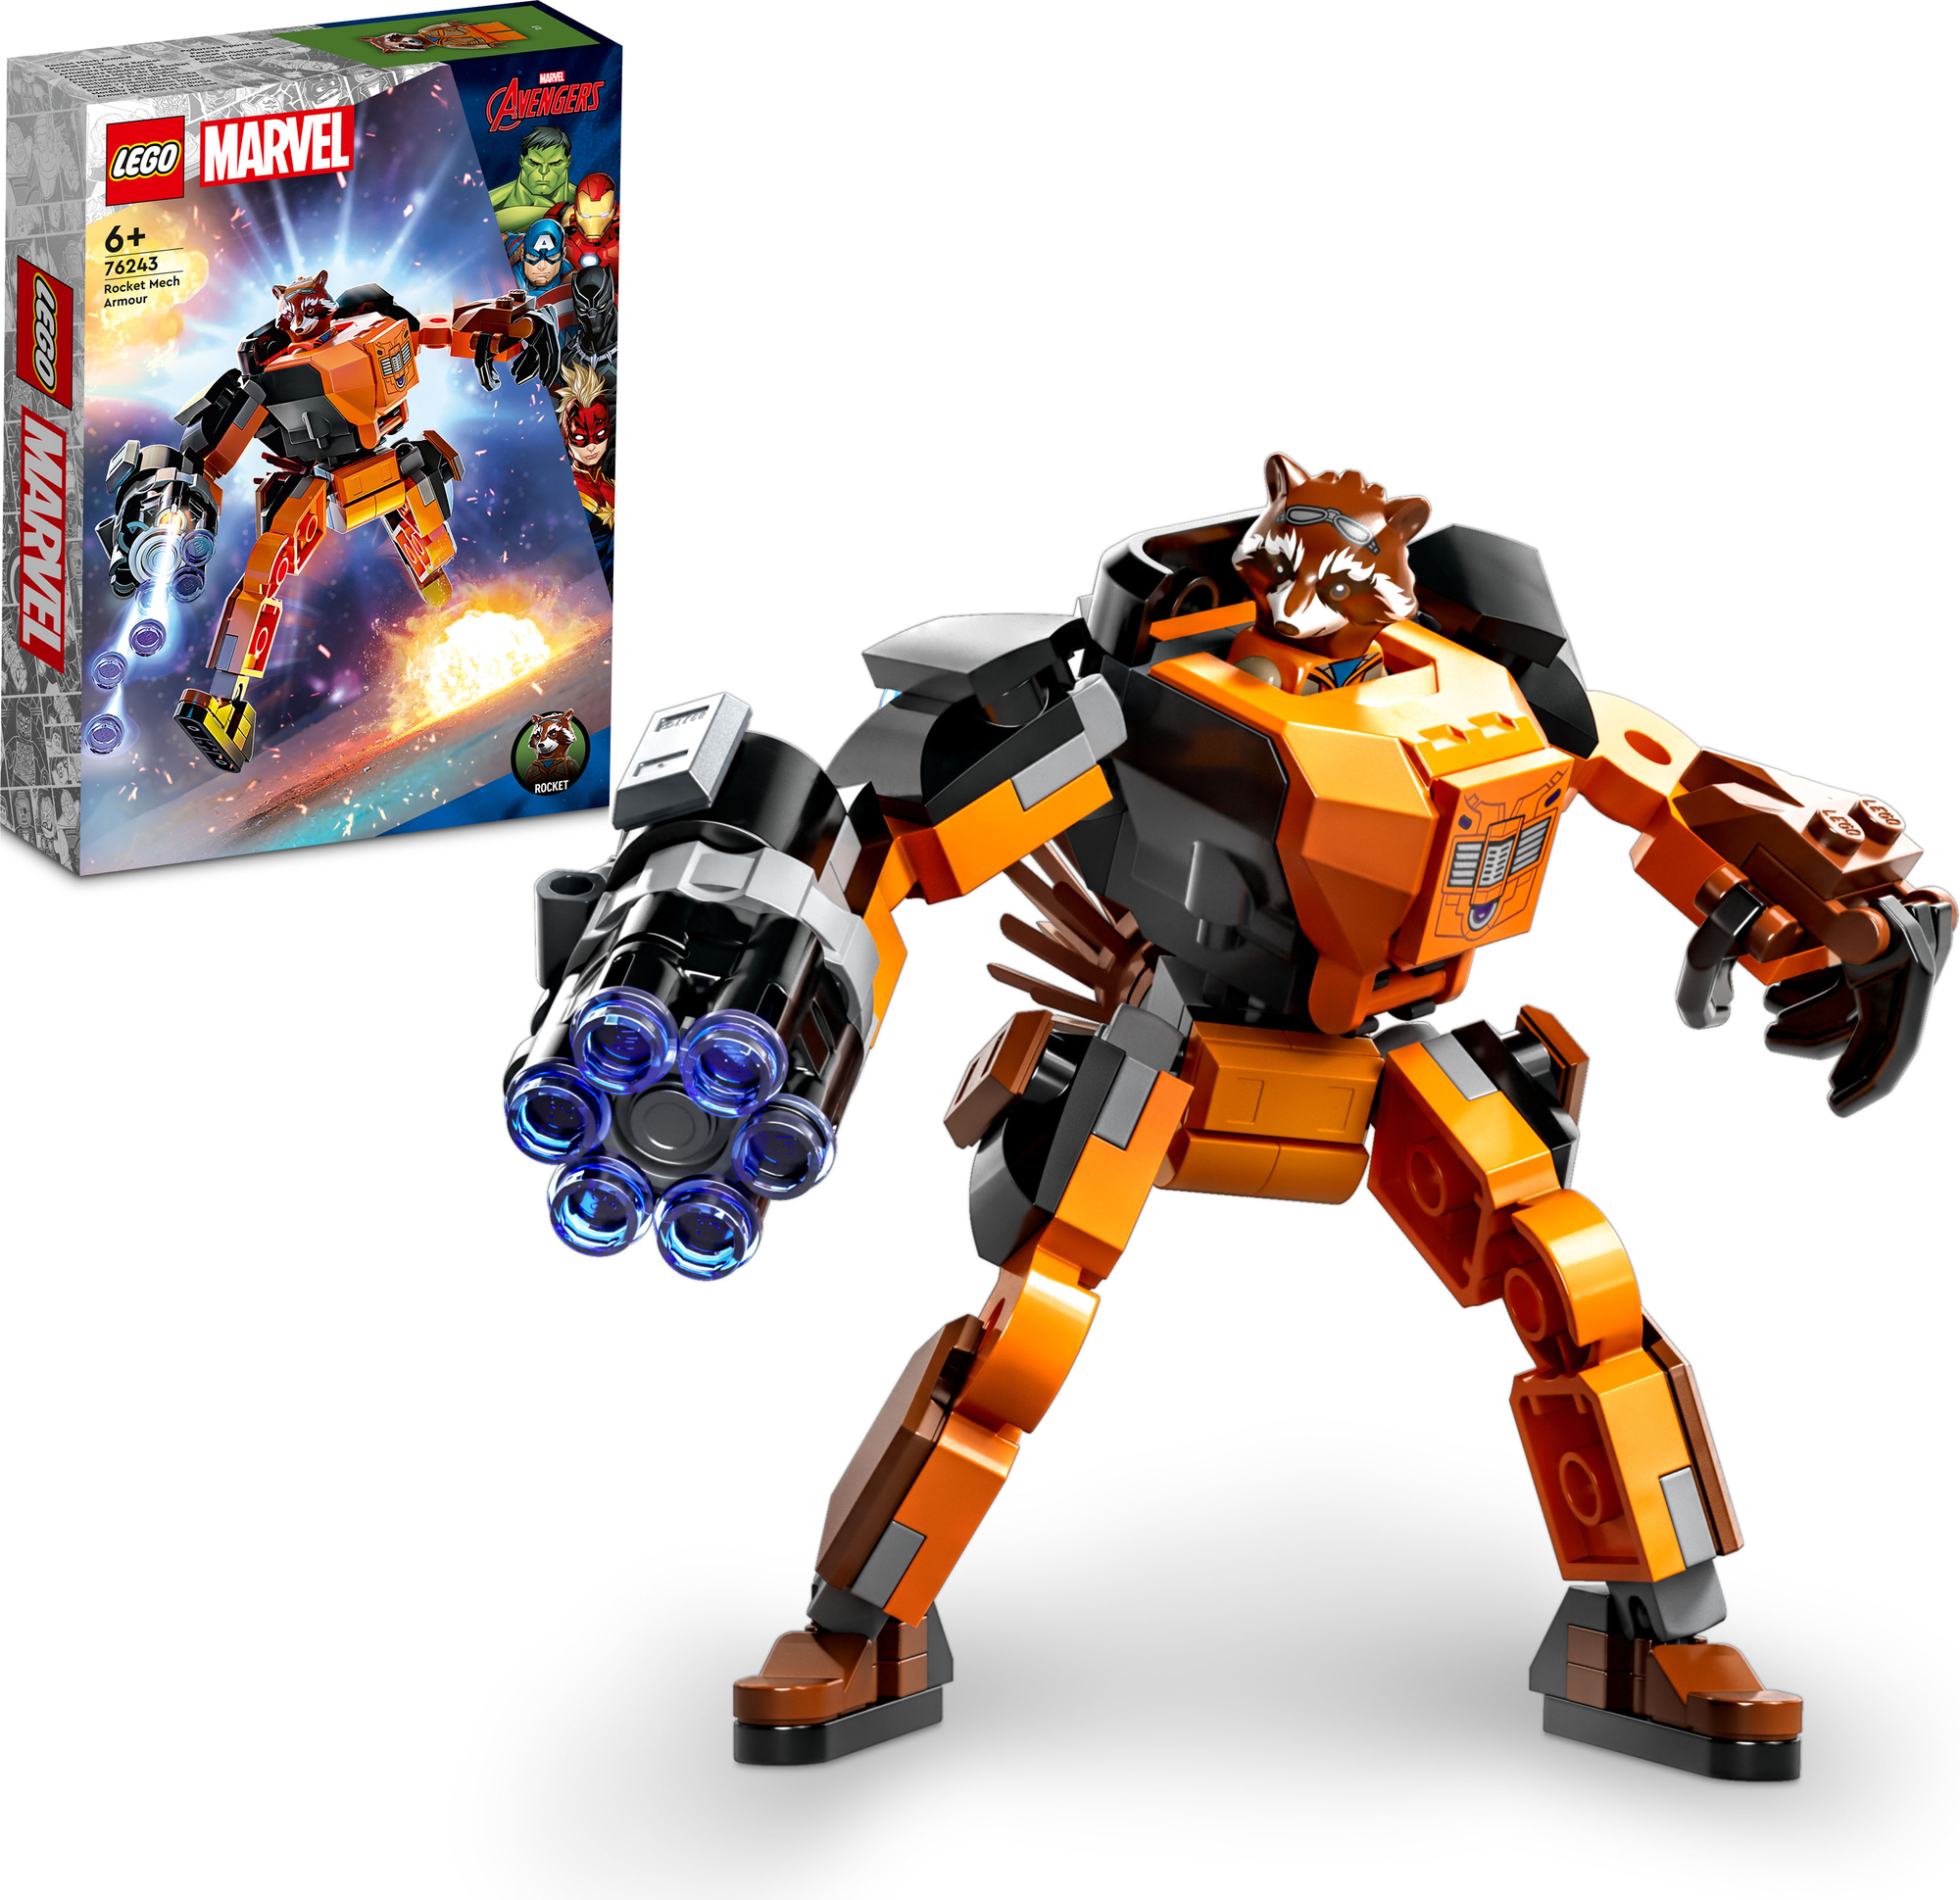 ZURU MAX COSTRUZIONI MINI FIGURE COMPATIBILI LEGO 15 PERSONAGGI | Natullo  Toys